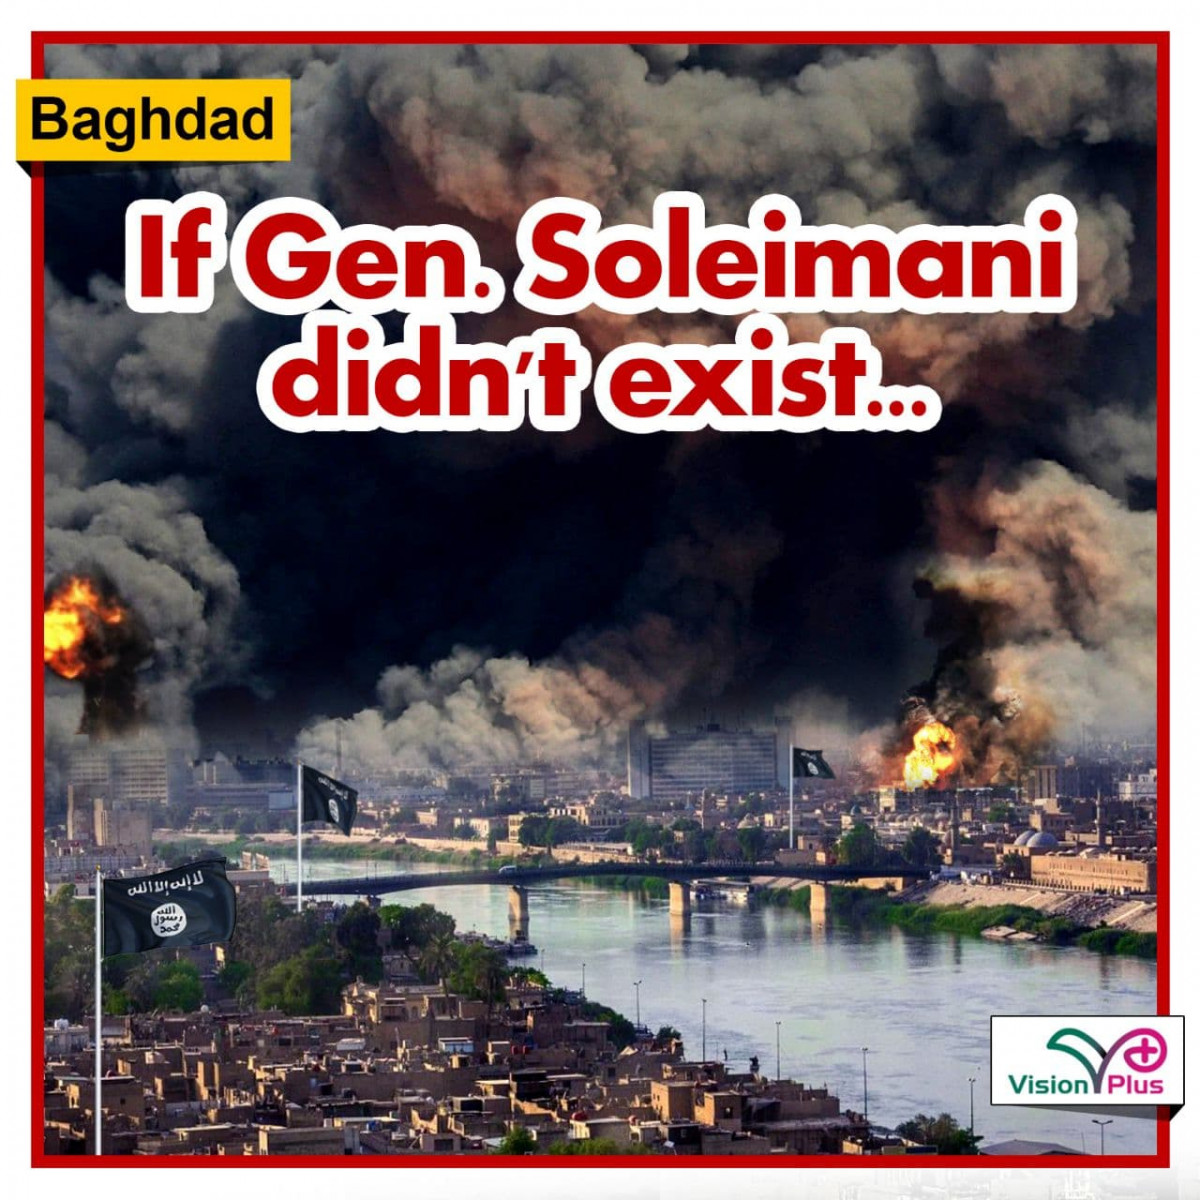 If Gen. Soleimani didn't exist